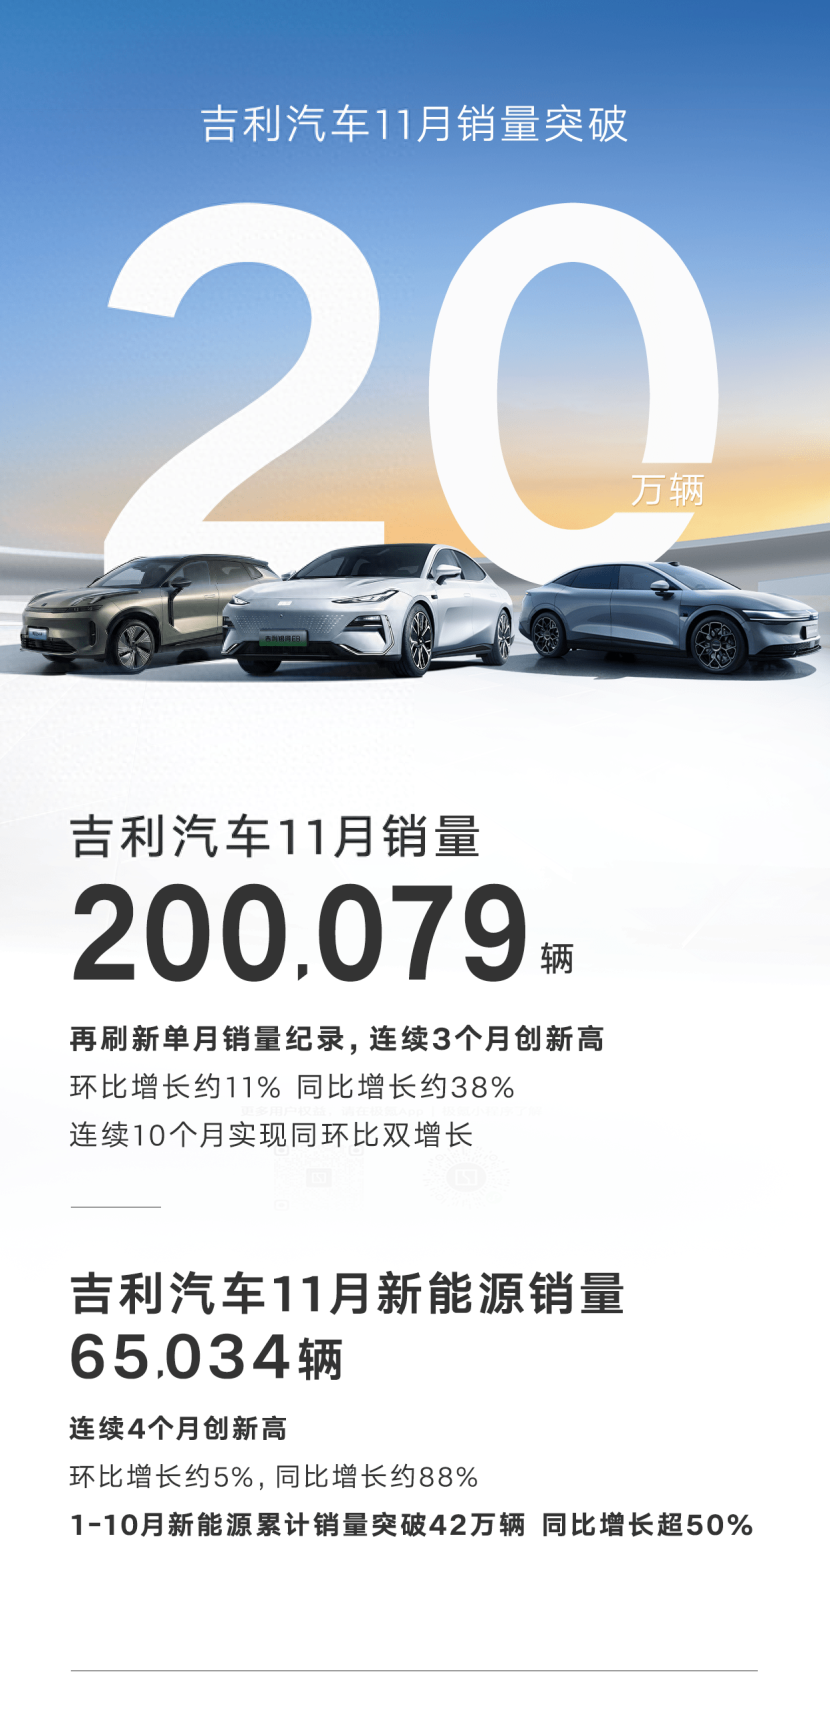 吉利汽车11月销量突破20万辆大关，再创历史新高  第1张